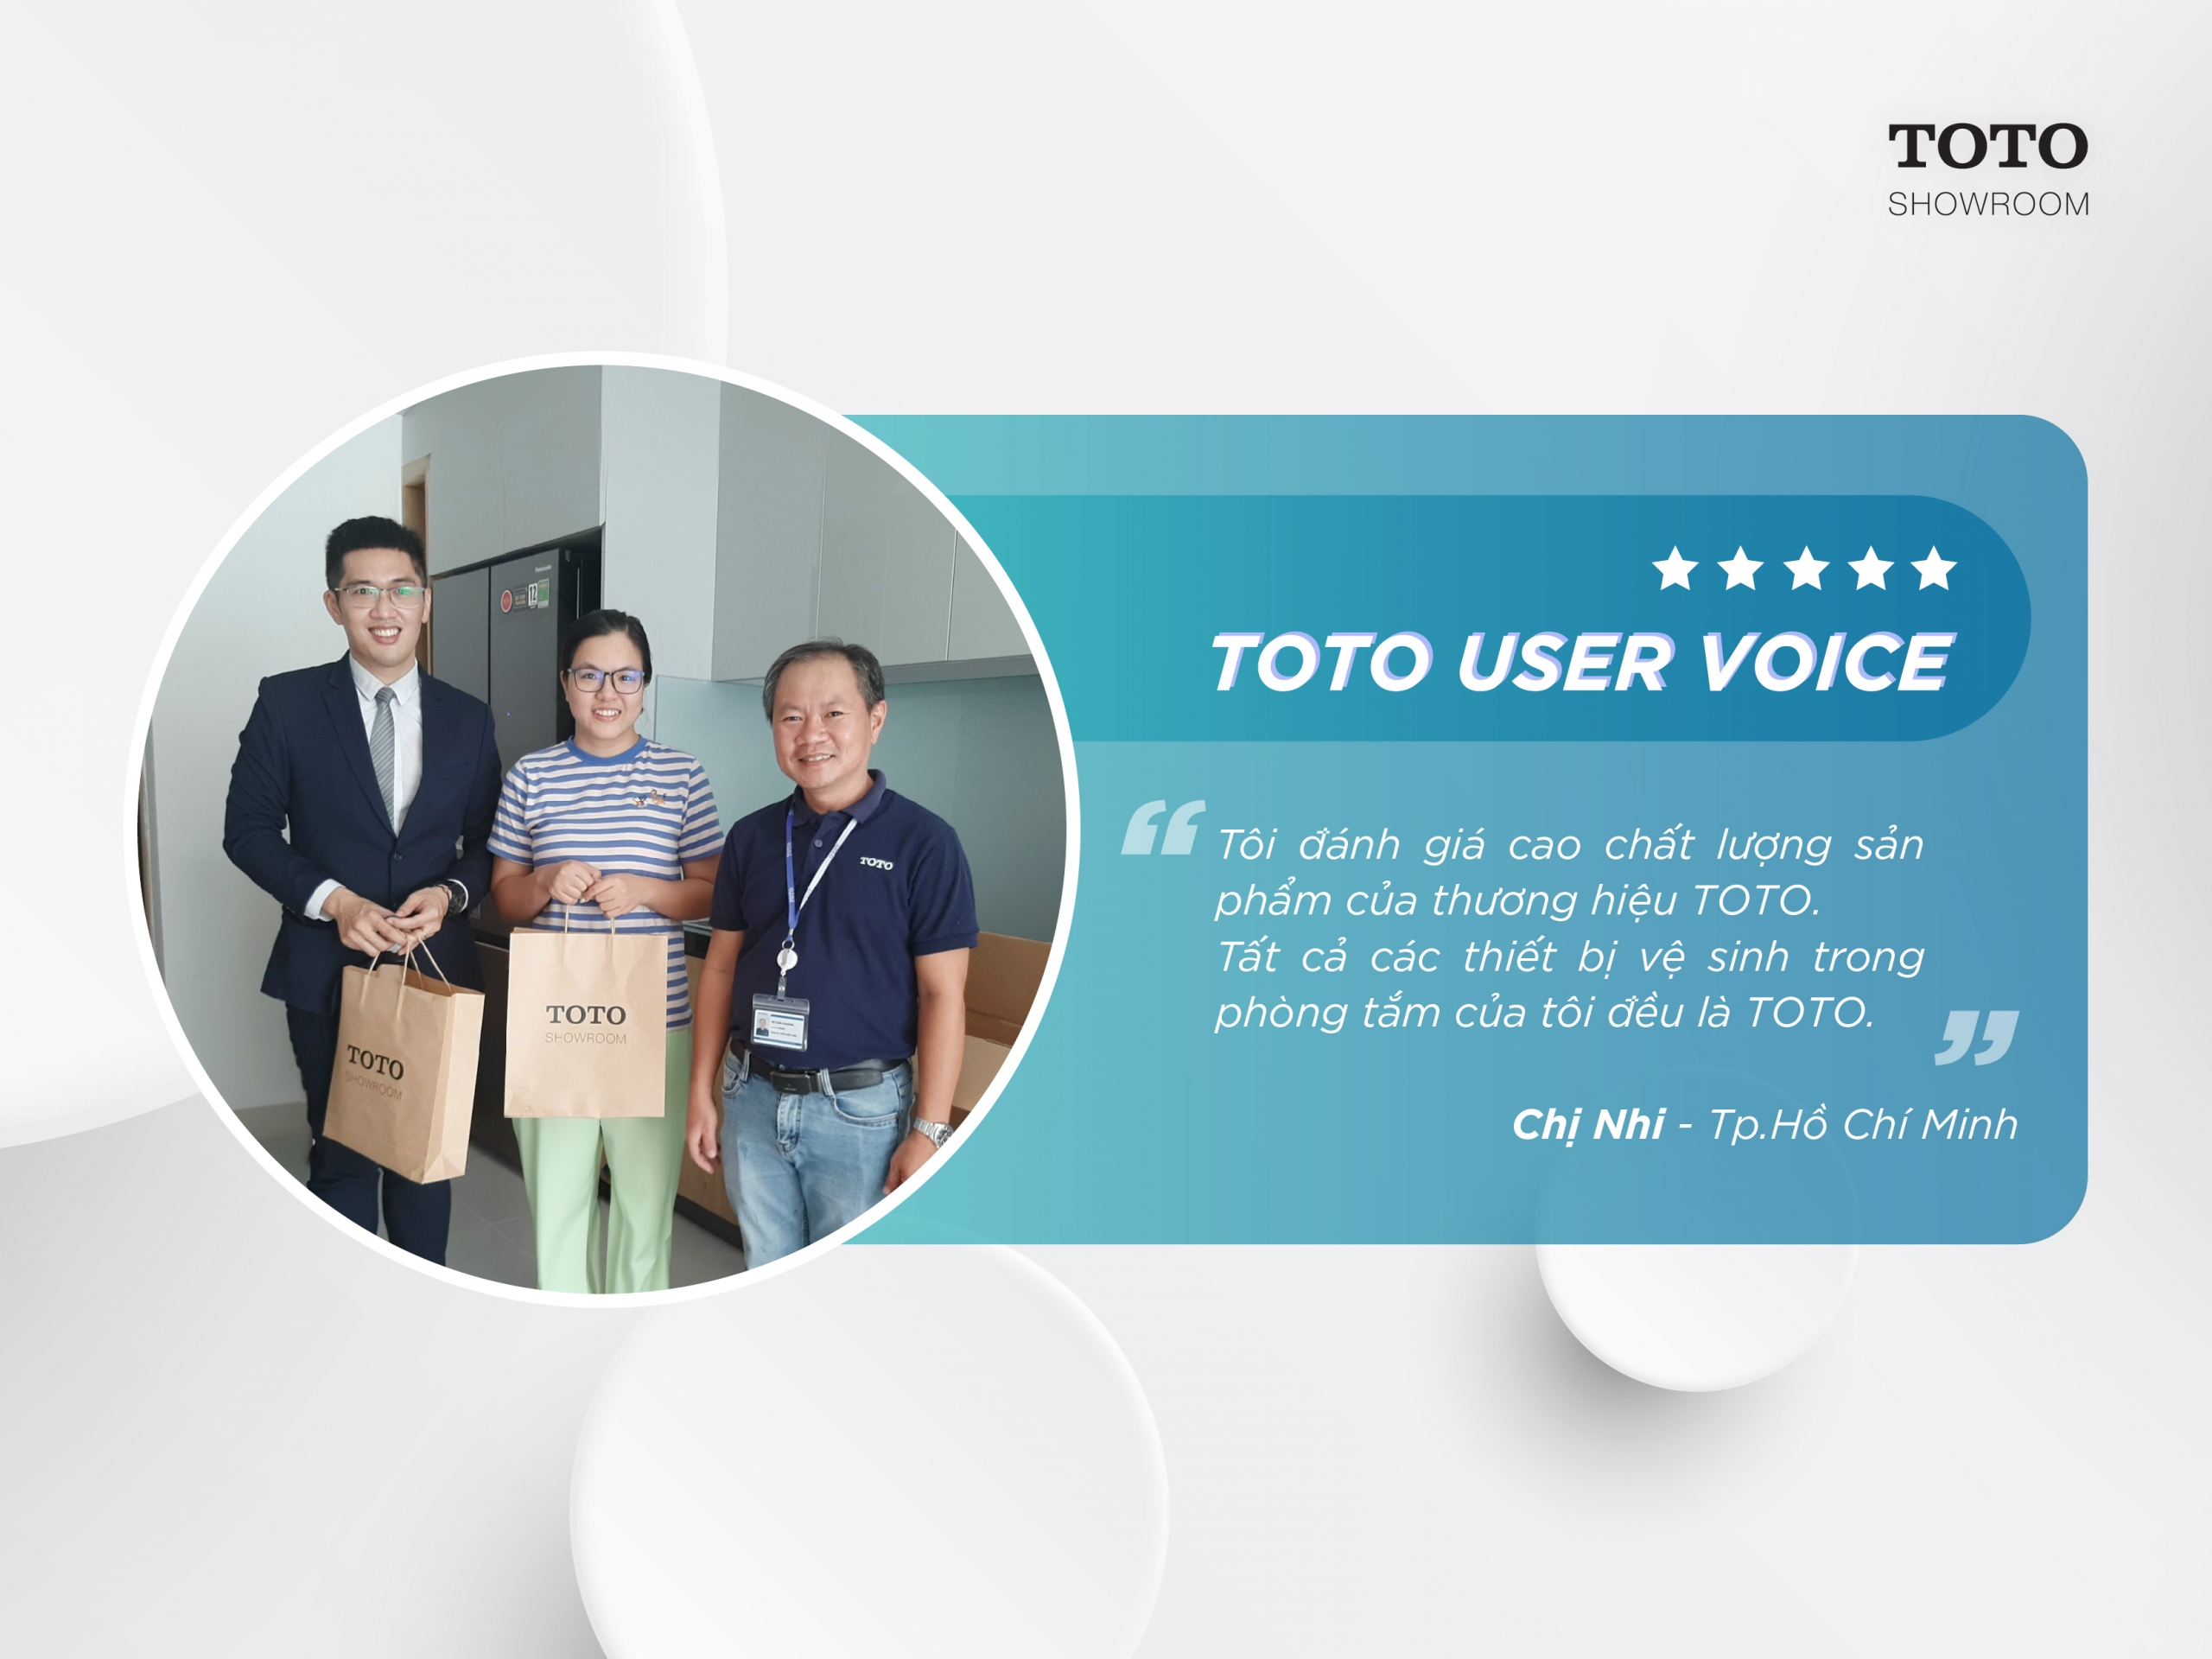 “Tôi đánh giá cao chất lượng sản phẩm của thương hiệu TOTO, Tất cả các thiết bị vệ sinh trong phòng tắm của tôi đều là TOTO, Và bàn cầu điện tử GG là một sản phẩm tôi thật sự yêu thích”. Chị Nhi - Thành phố Hồ Chí Minh